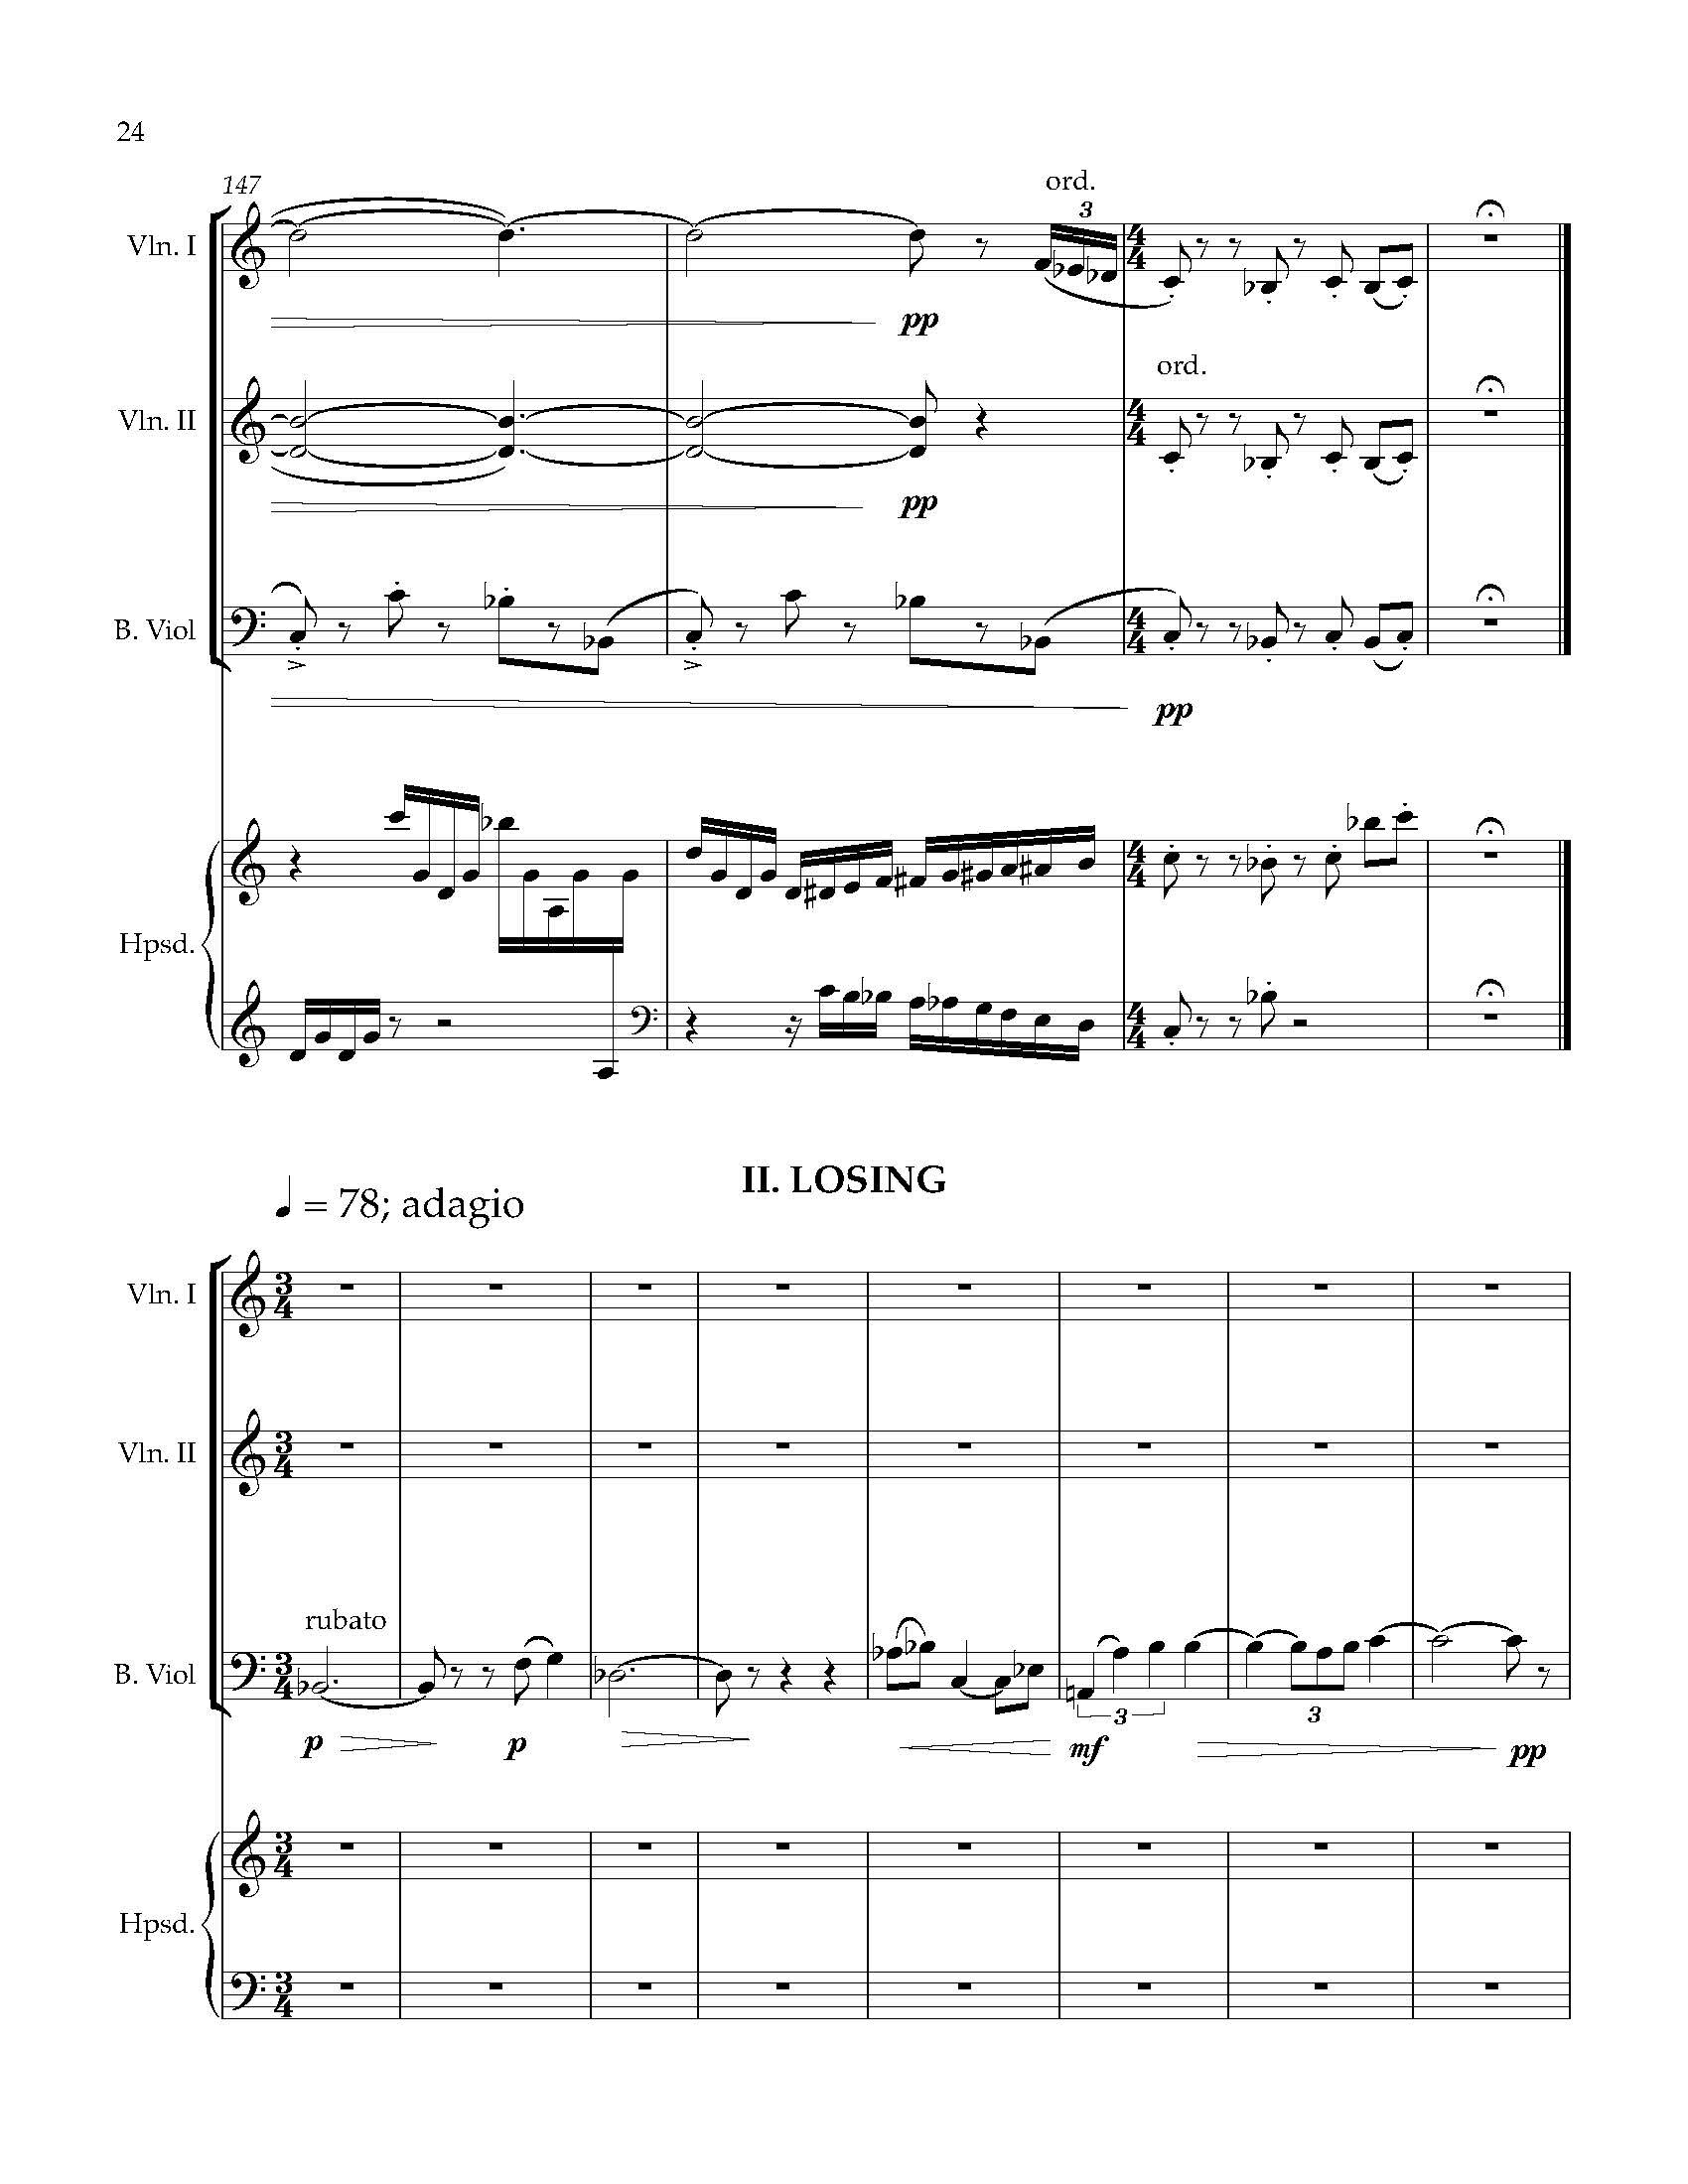 Sonata Sonare - Complete Score_Page_30.jpg